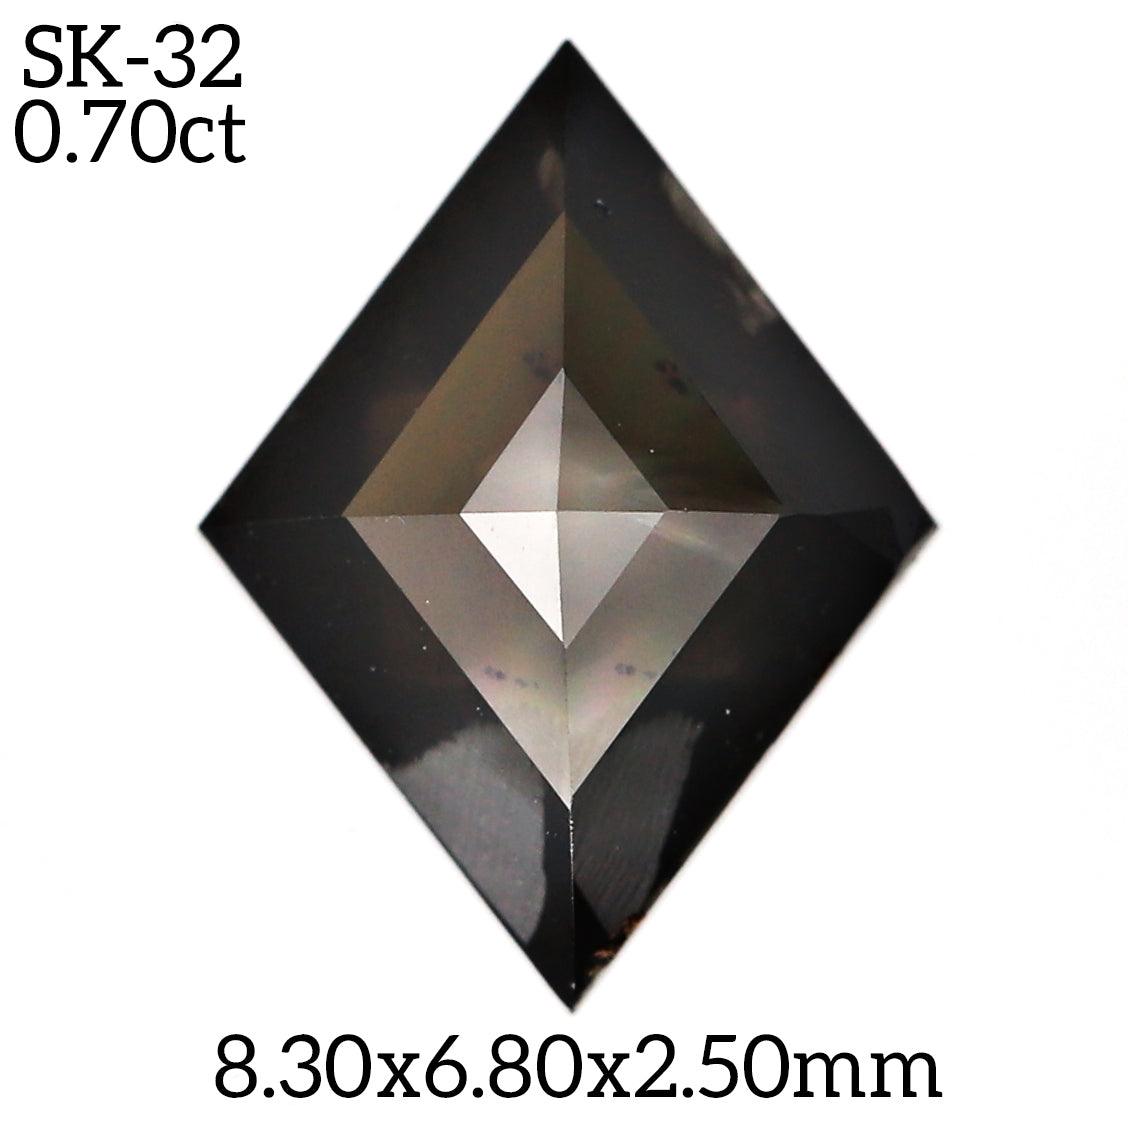 SK32 - Salt and pepper kite diamond